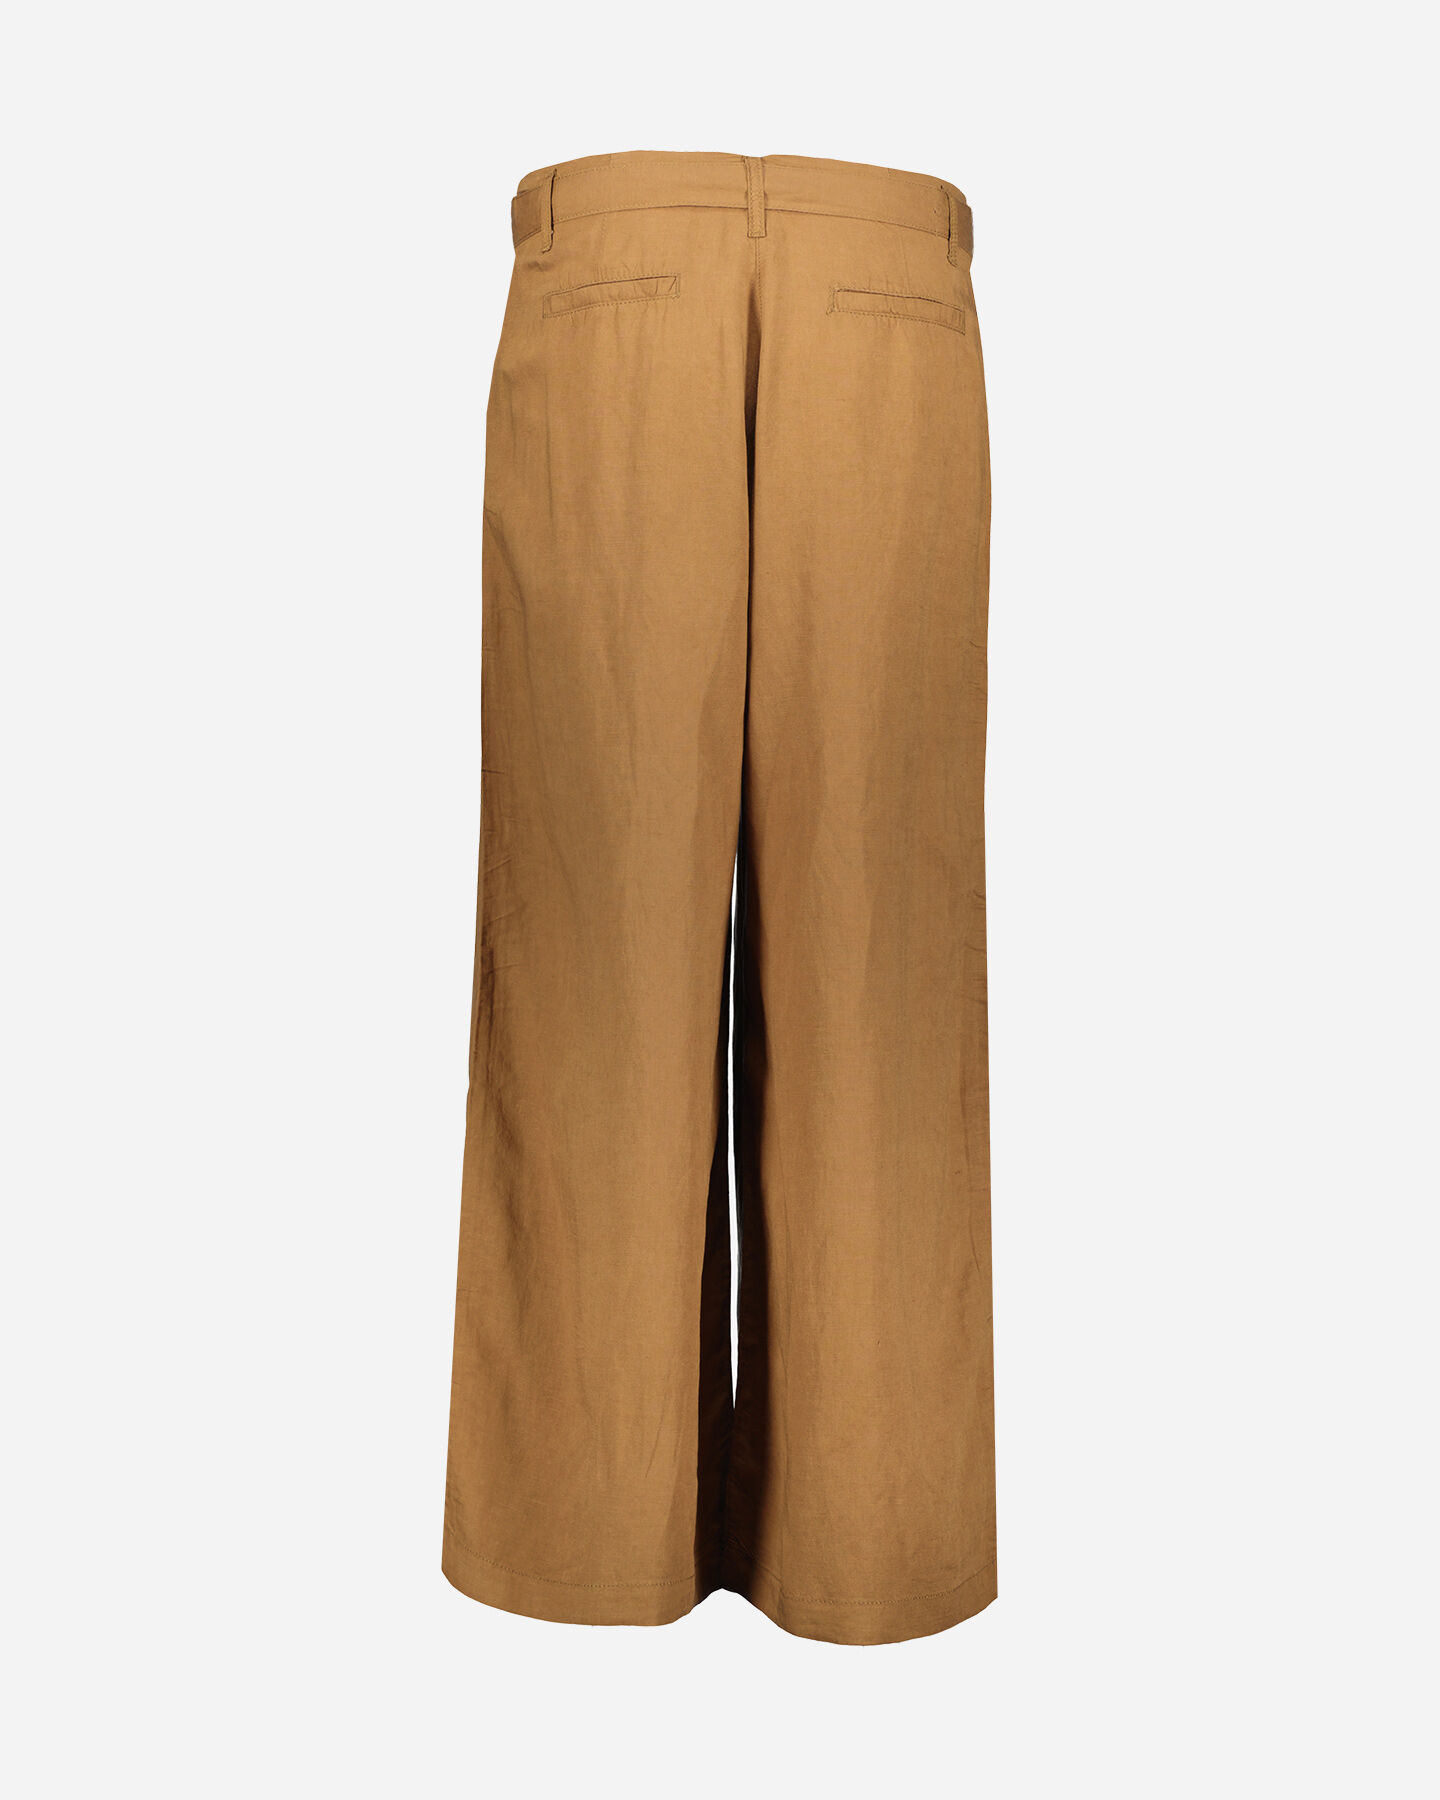  Pantalone DACK'S ESSENTIAL W S4129735|123|40 scatto 2